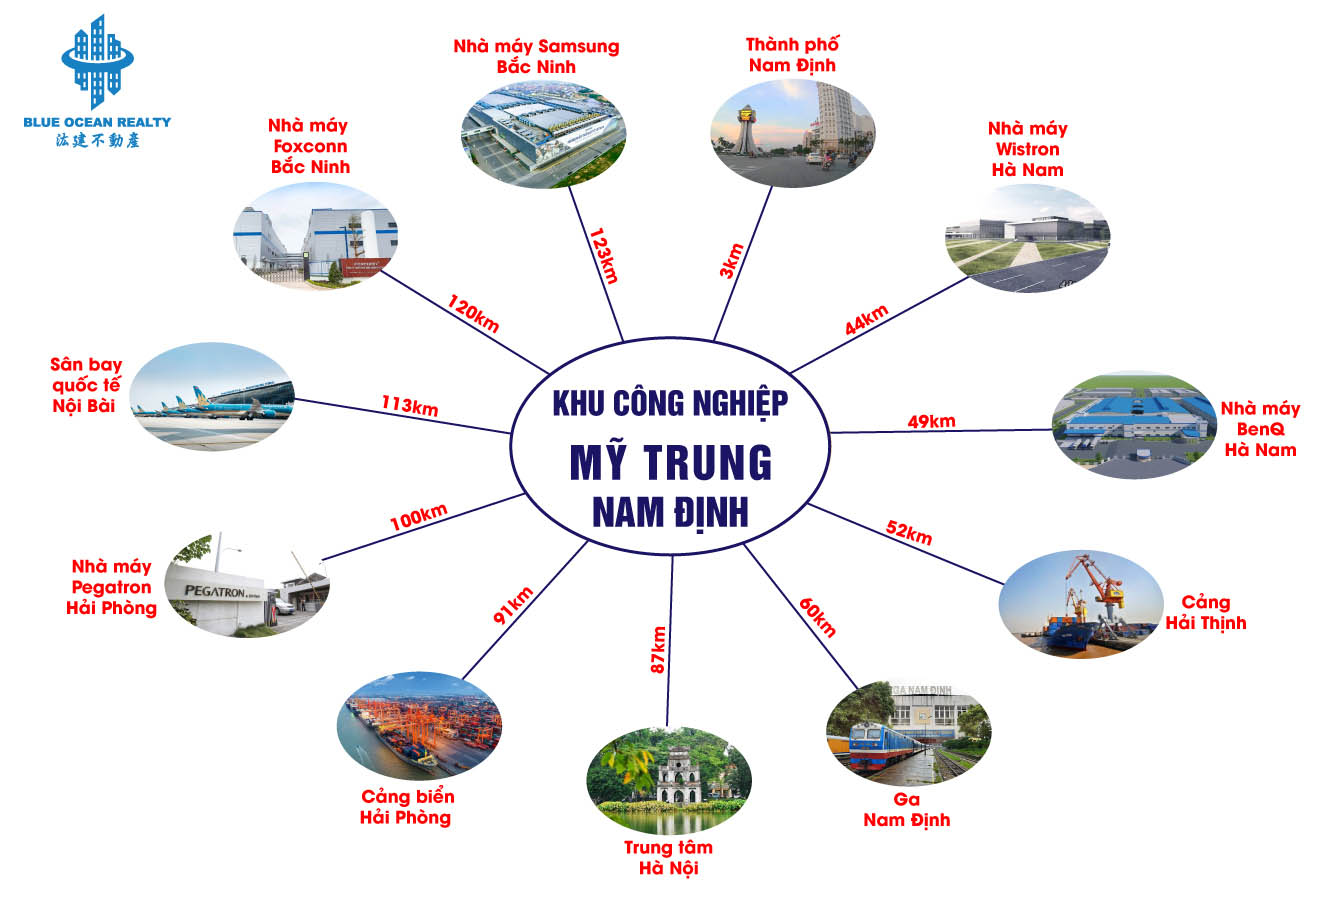 Khu công nghiệp (KCN) Mỹ Trung - Nam Định